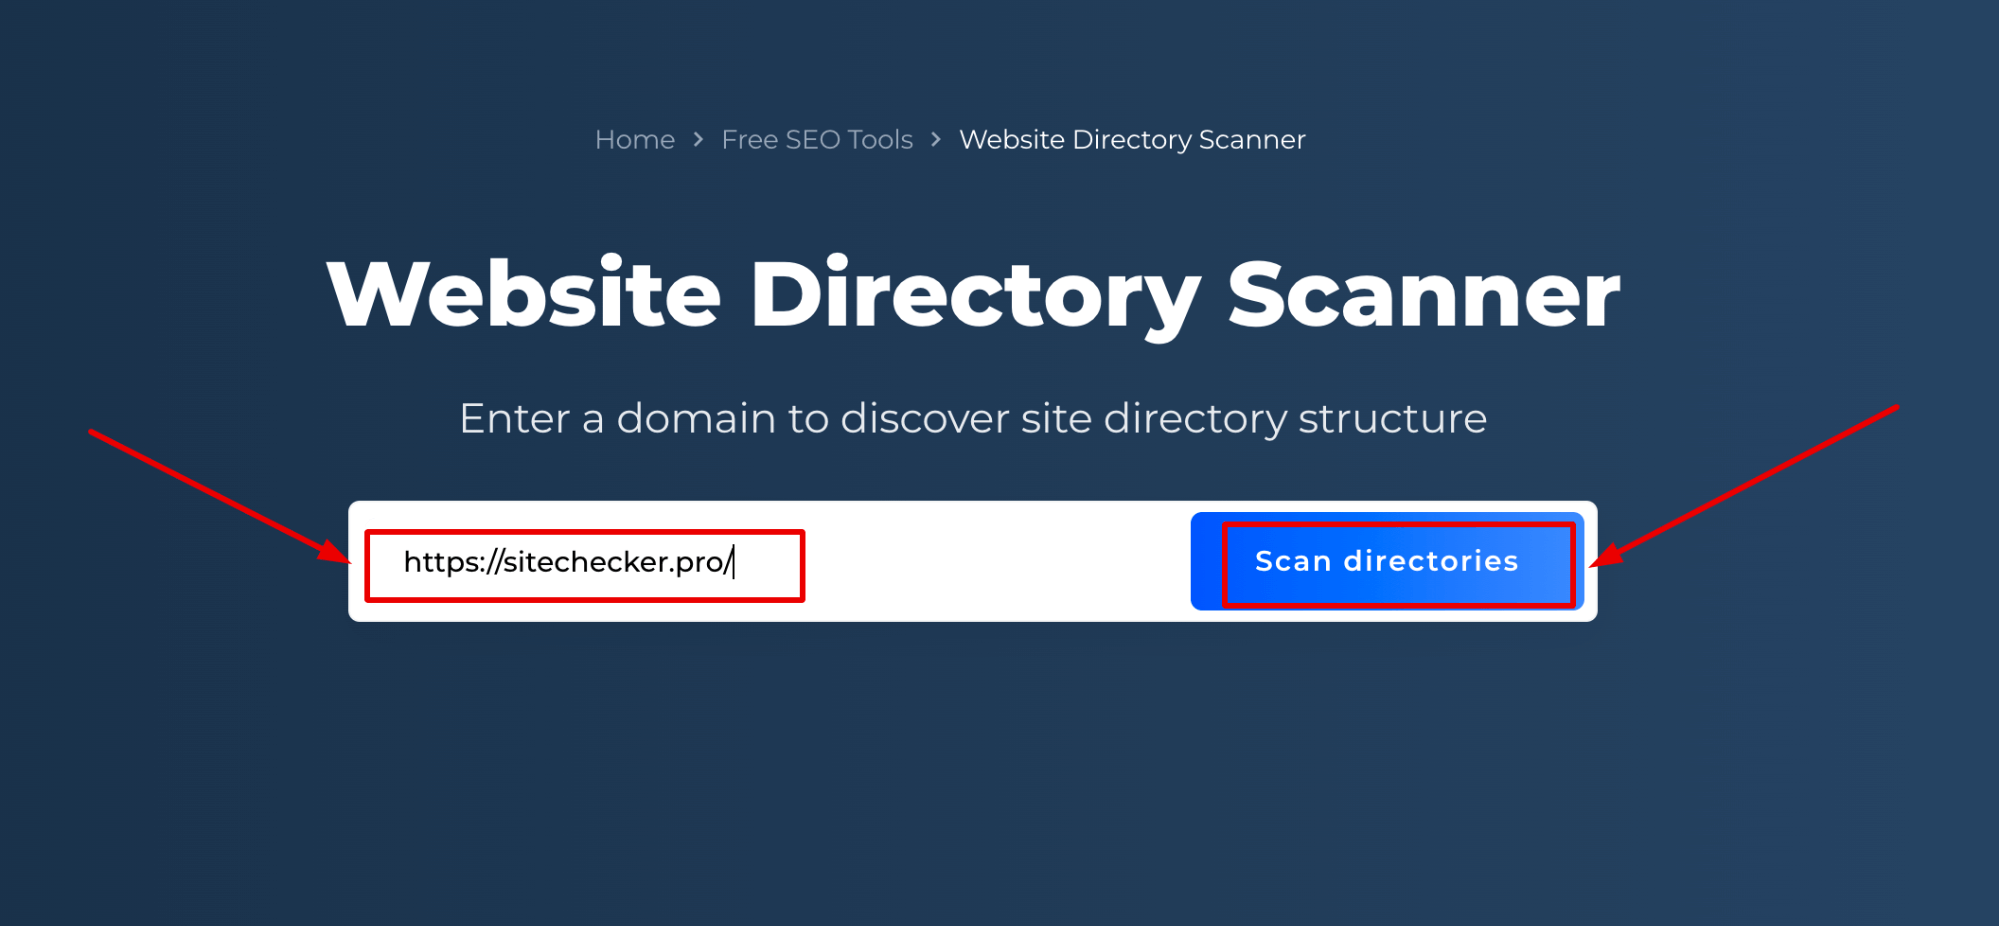 Scanner de diretório de sites